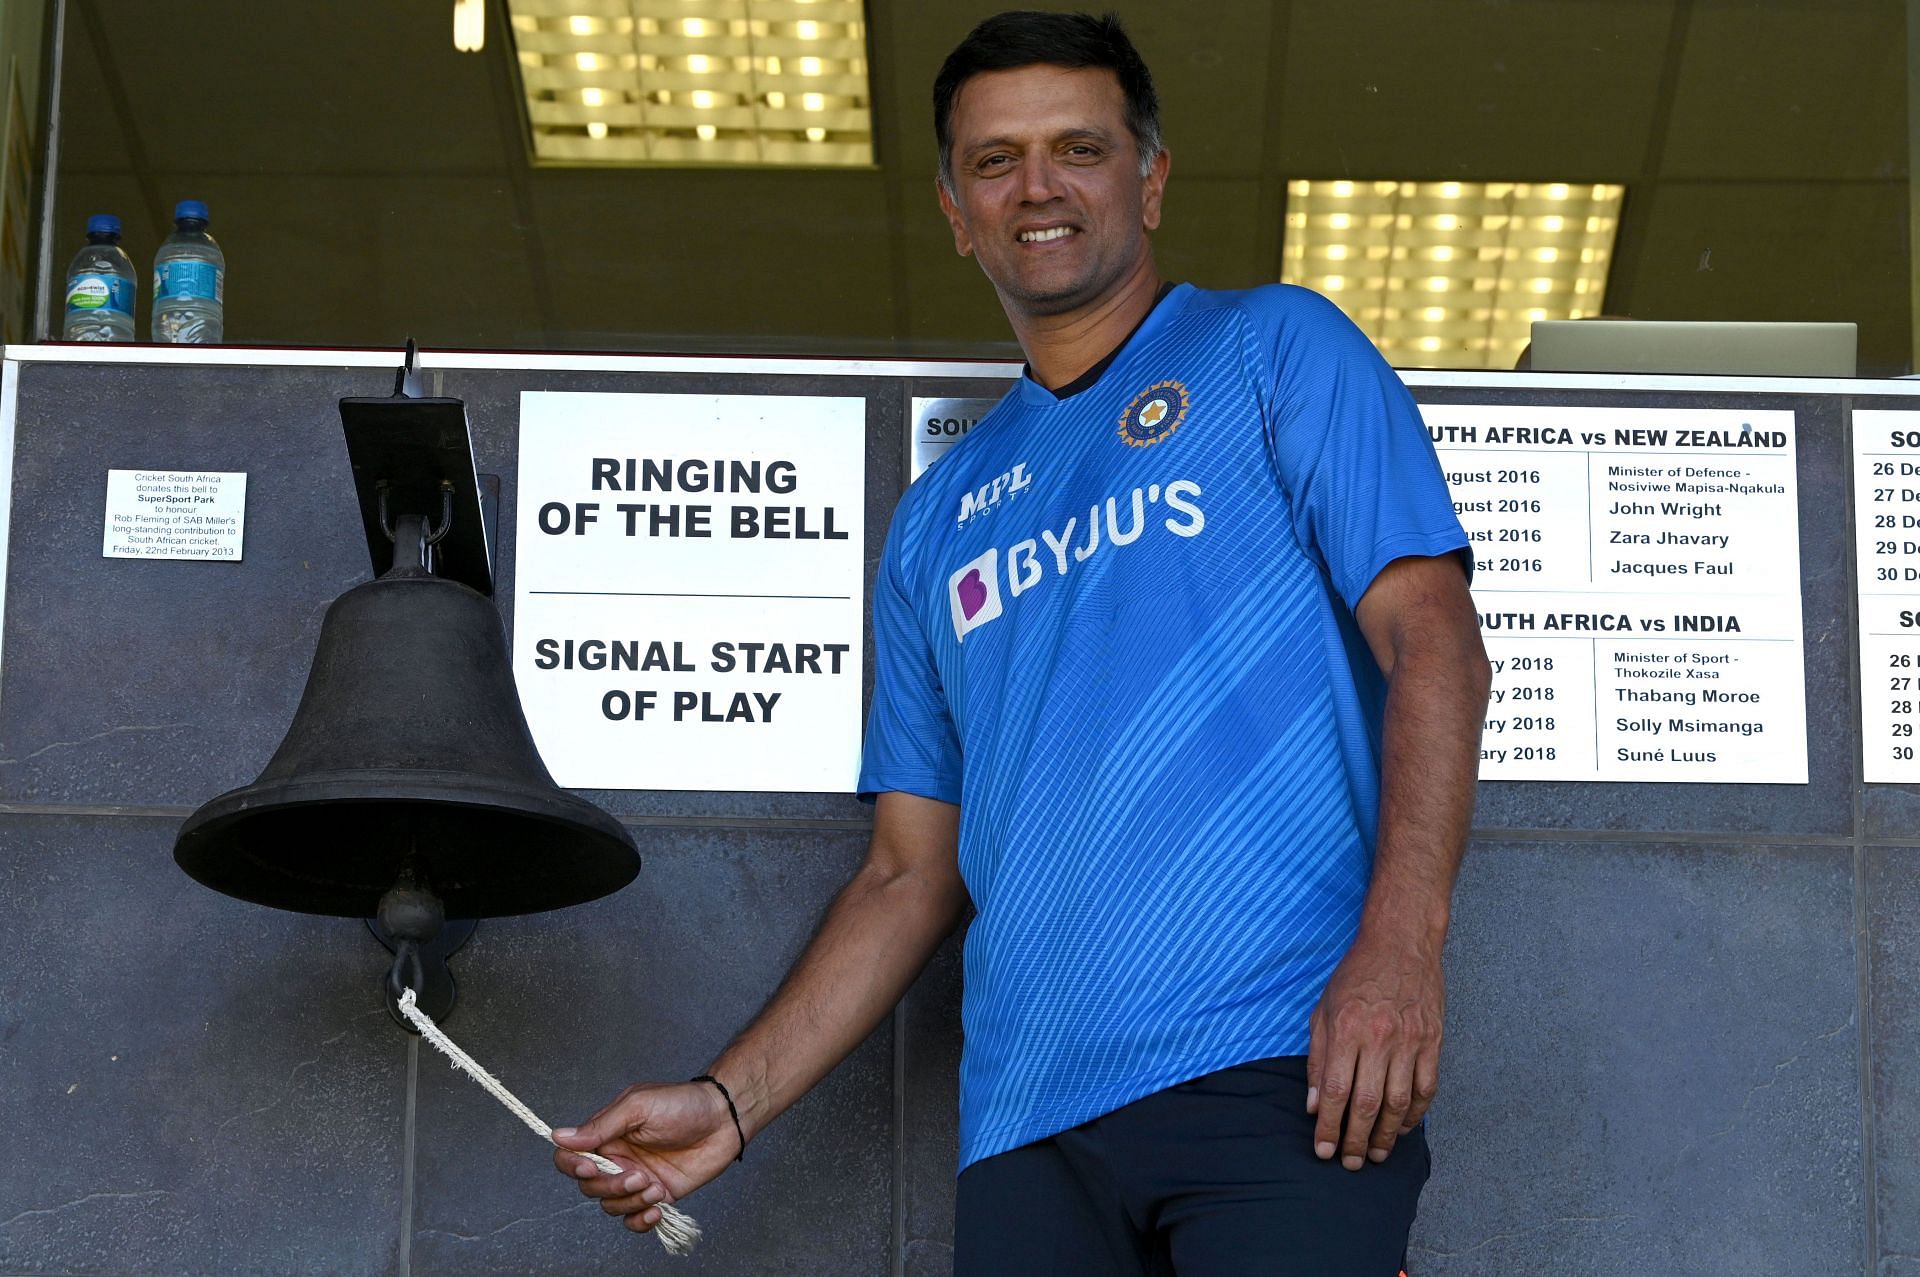 राहुल द्रविड़ का ध्&zwj;यान इस समय श्रीलंका के खिलाफ सीमित ओवर सीरीज पर लगा है